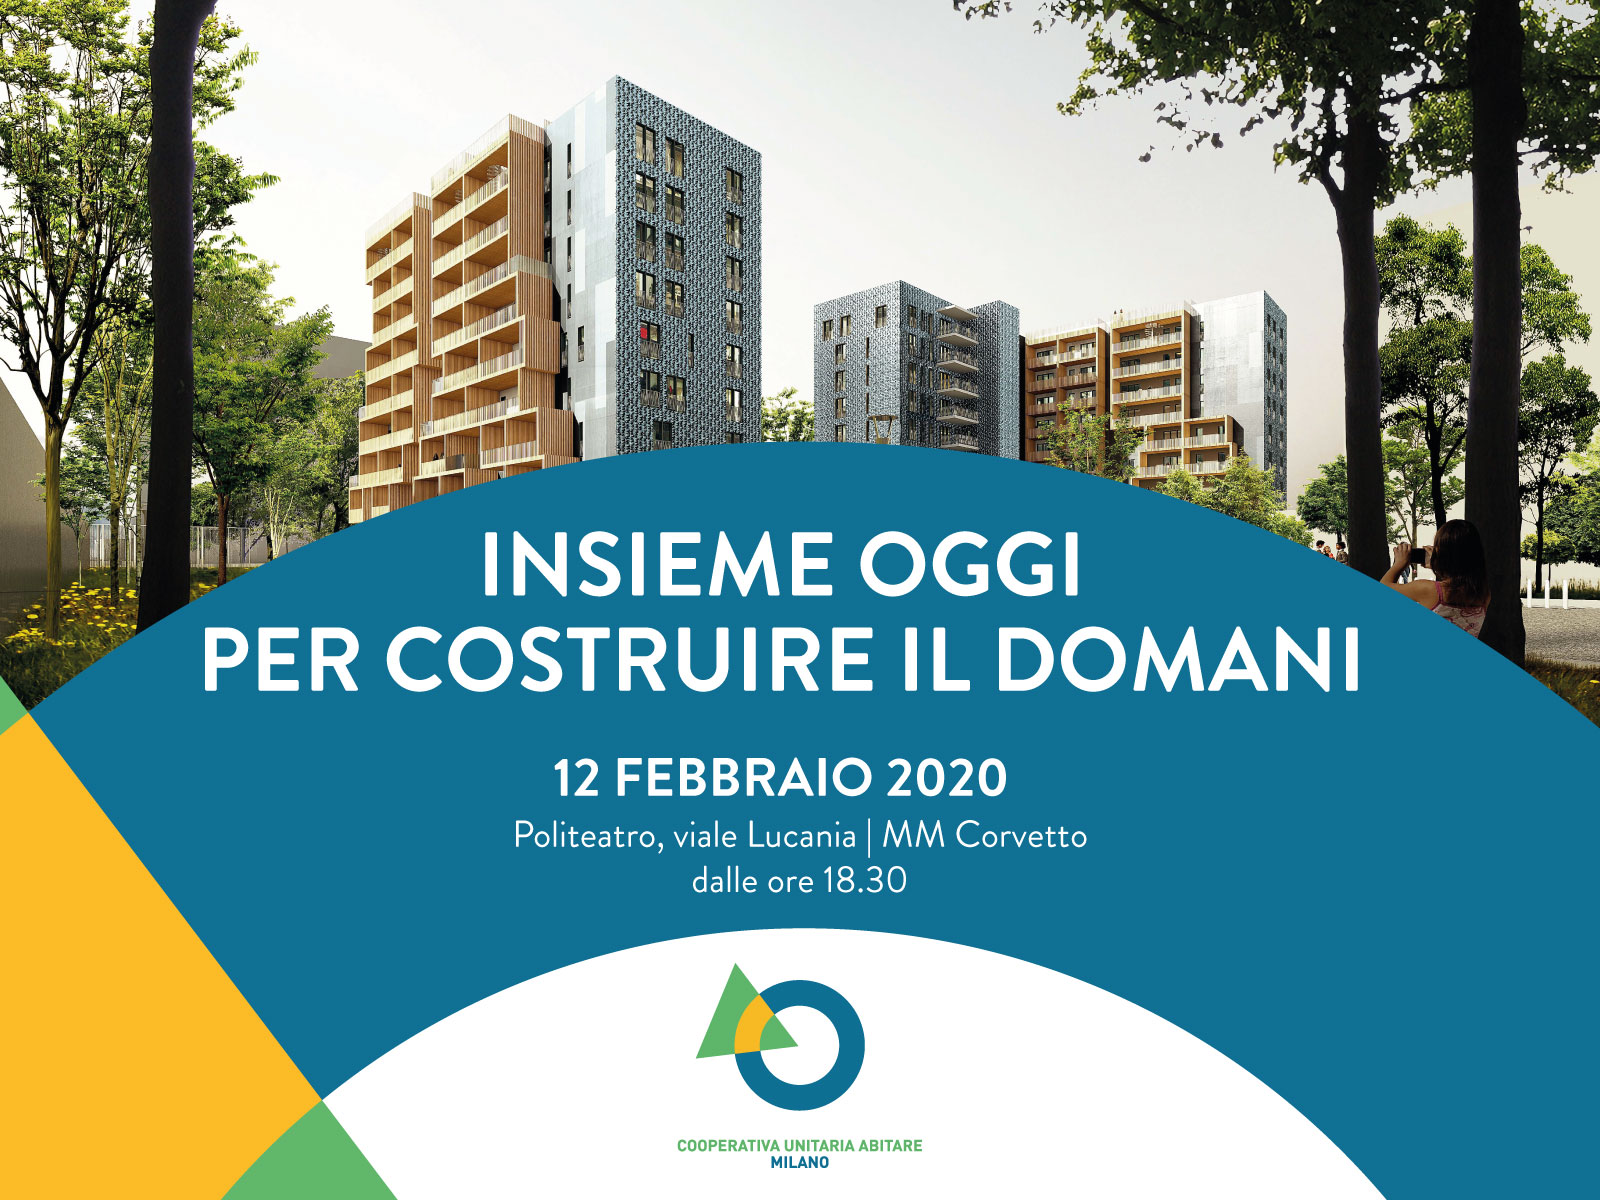 Insieme oggi per costruire il domani: nasce Cooperativa Unitaria Abitare Milano.